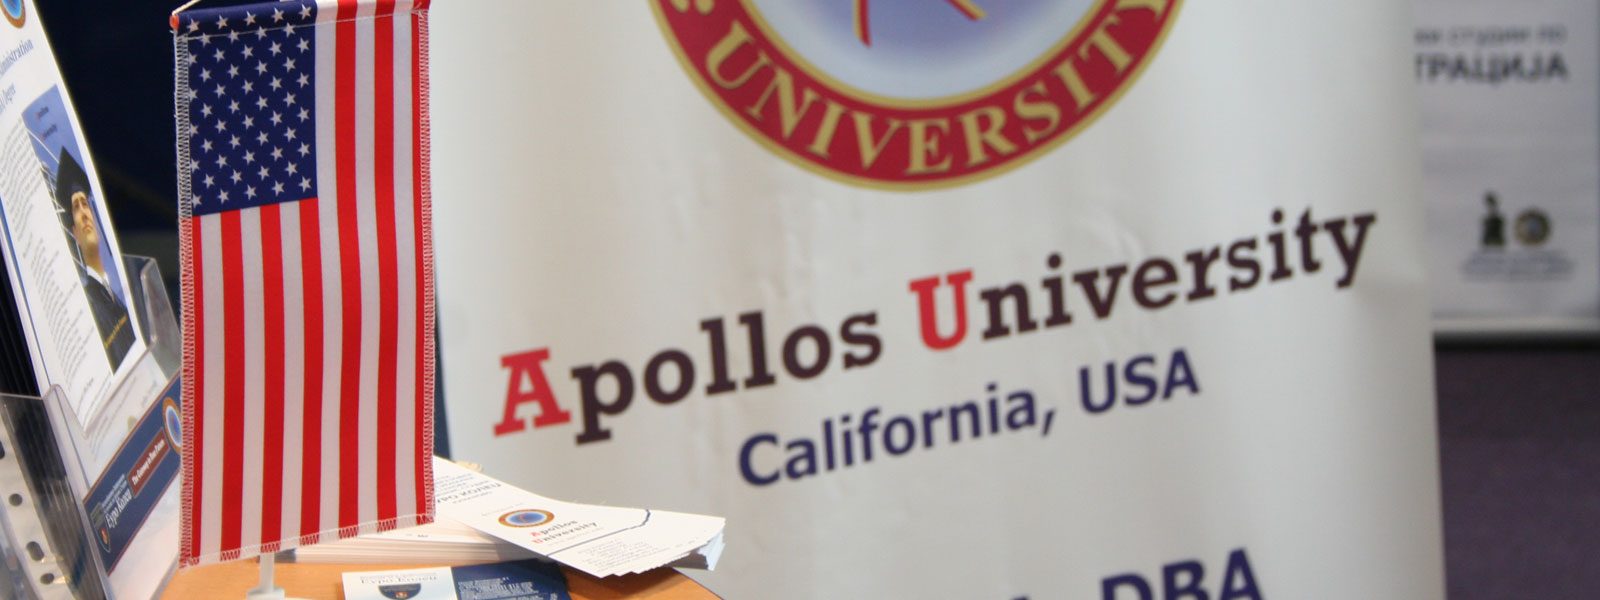 Apollos University – USA